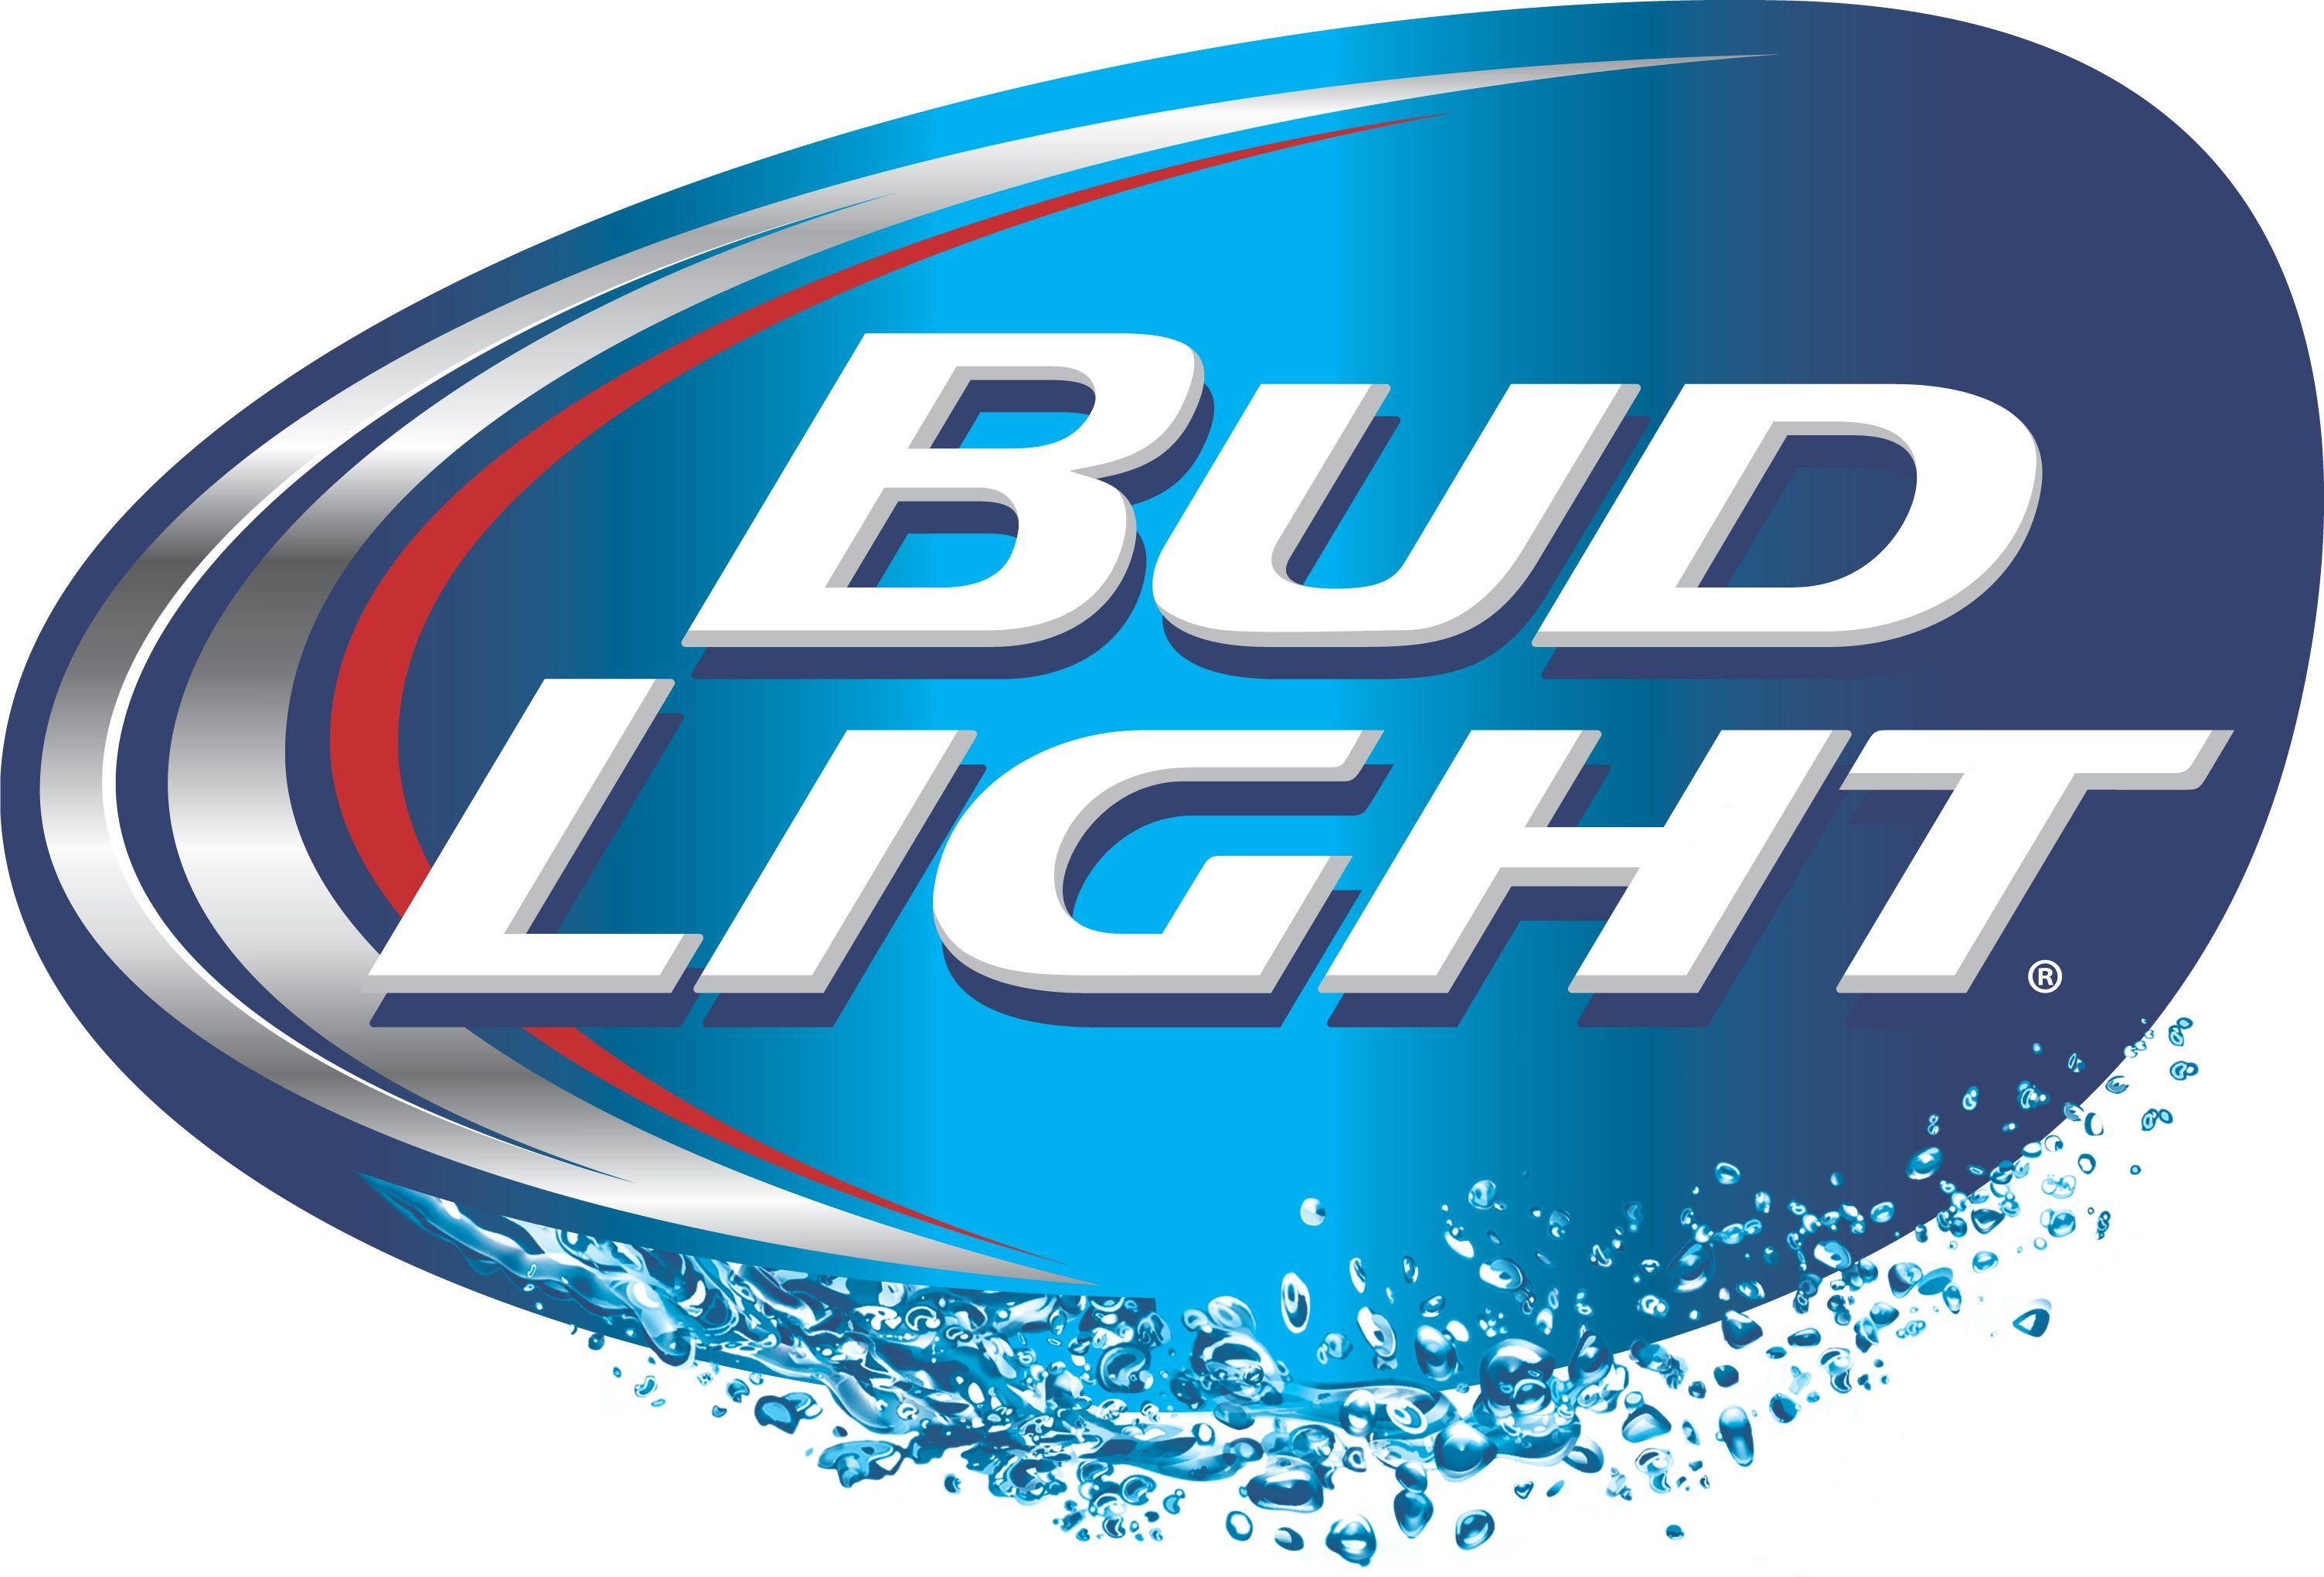 Google Light Logo - bud-light-logo - 12 Bars of Charity